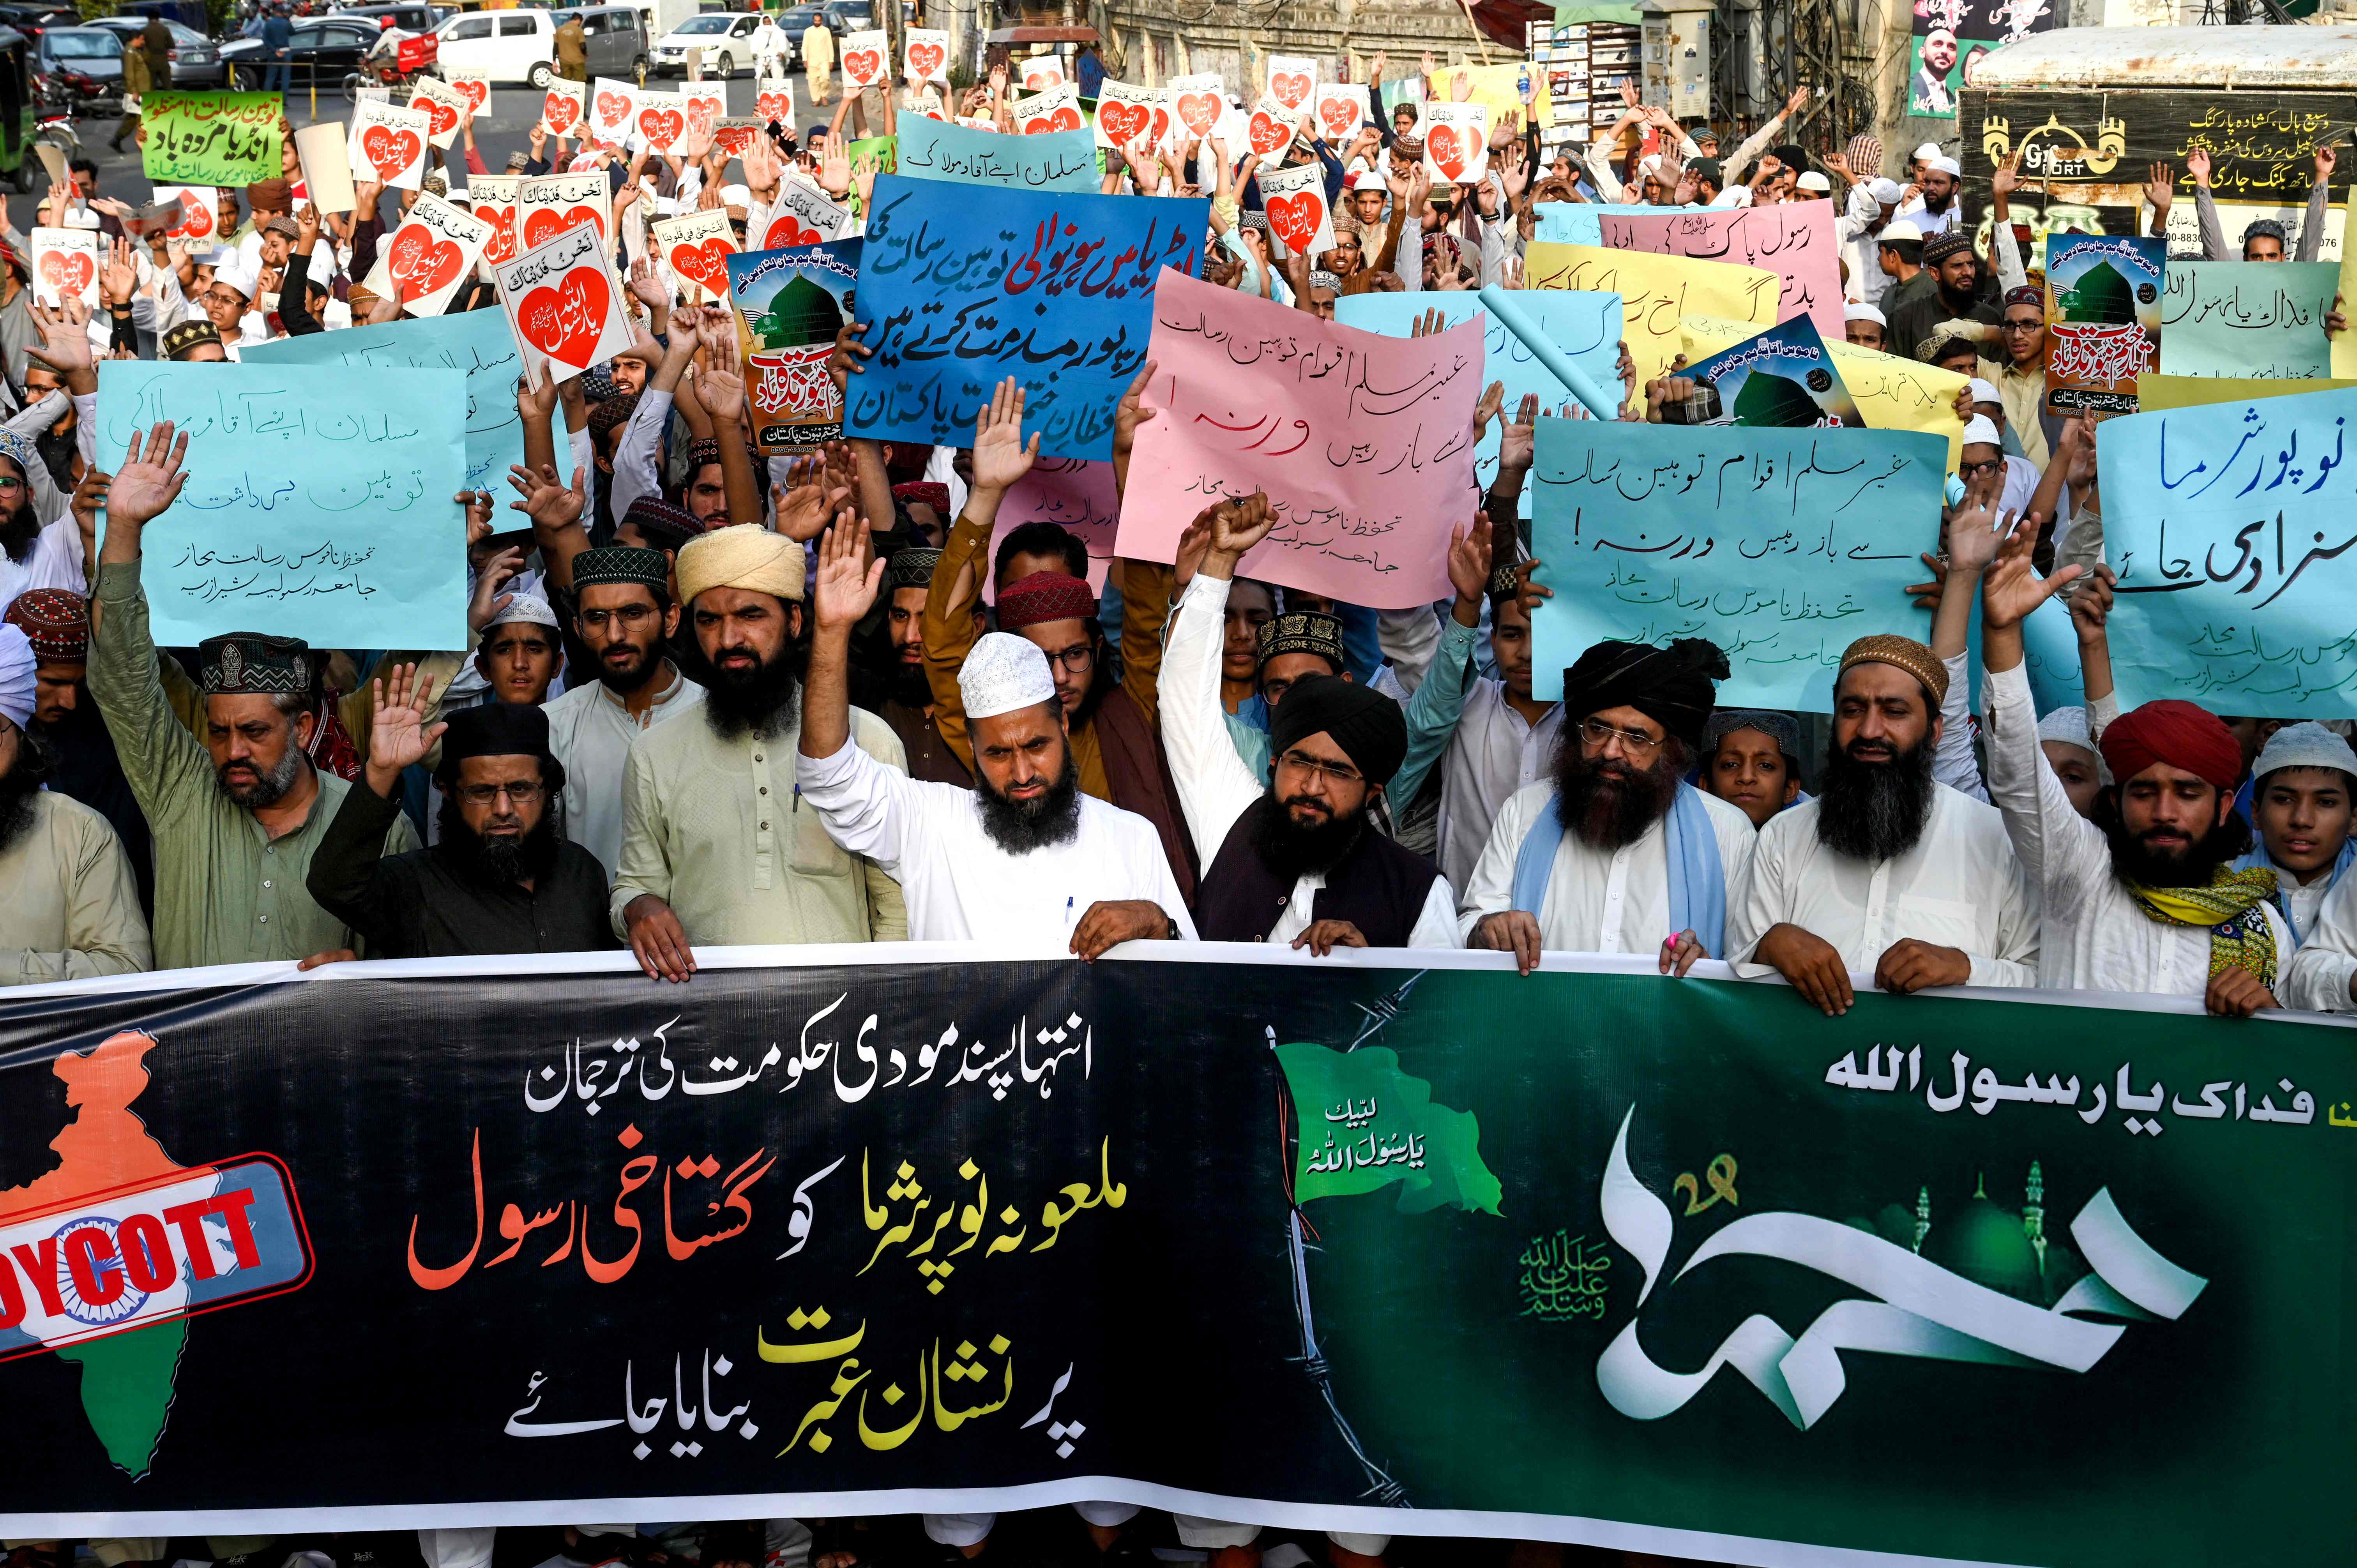 ‘이슬람 모욕’에 반발하는 이슬람인들 [출처:AFP]